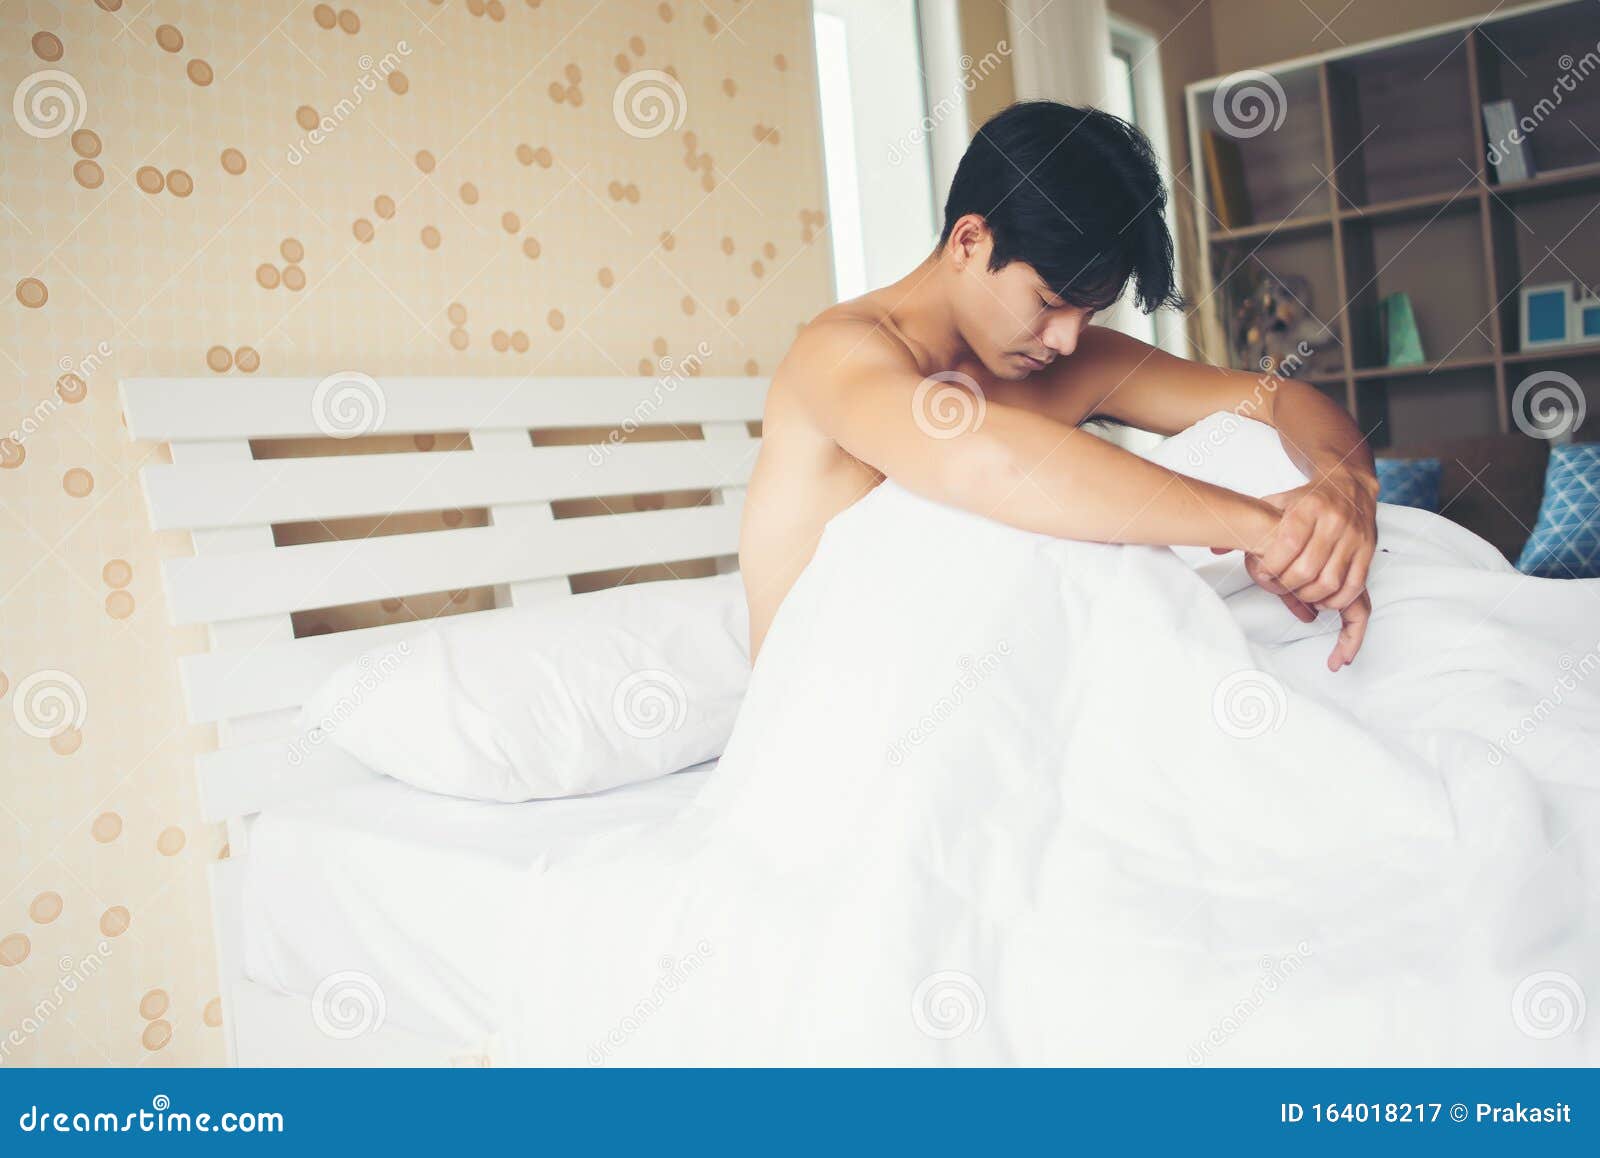 Связала парня на кровати. Мужчина сидит на кровати. Связанный мужчина на кровати. Пикрев ми парень сидит на кровати. Man sitting on Bed.